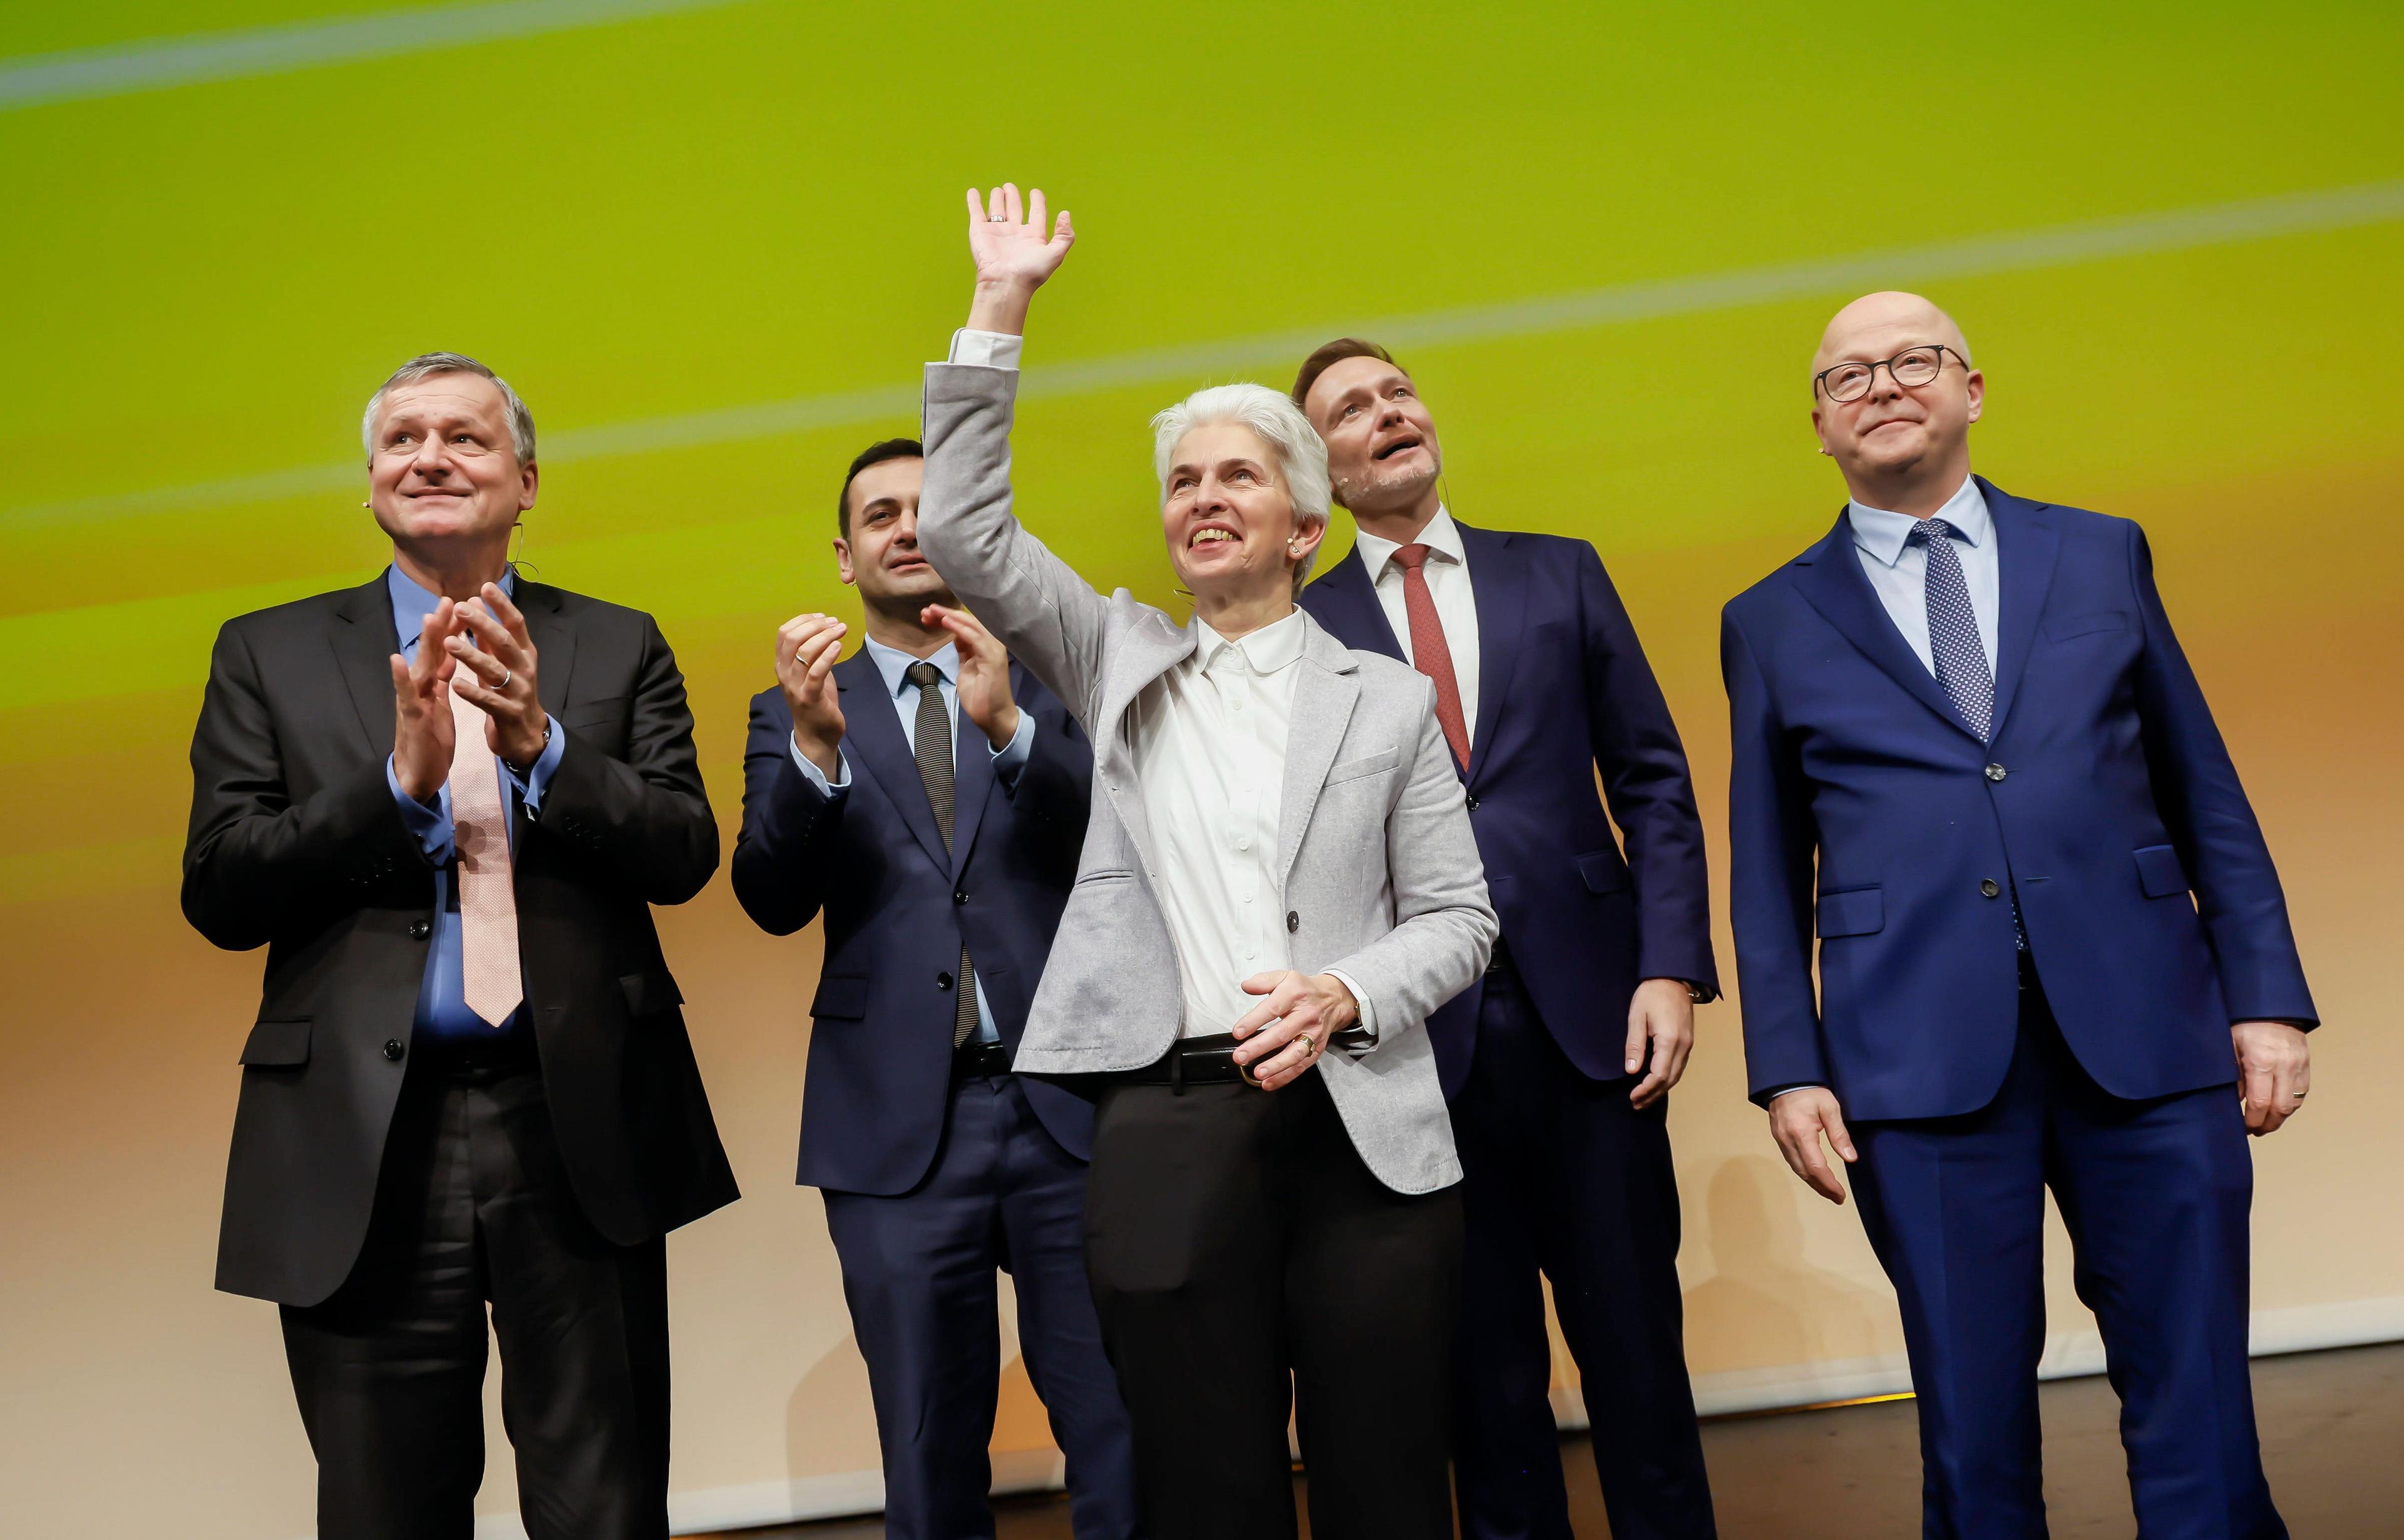 Die FDP zieht zu Felde gegen lästige EU-Verordnungen, die unnötig Menschenrechte schützen.